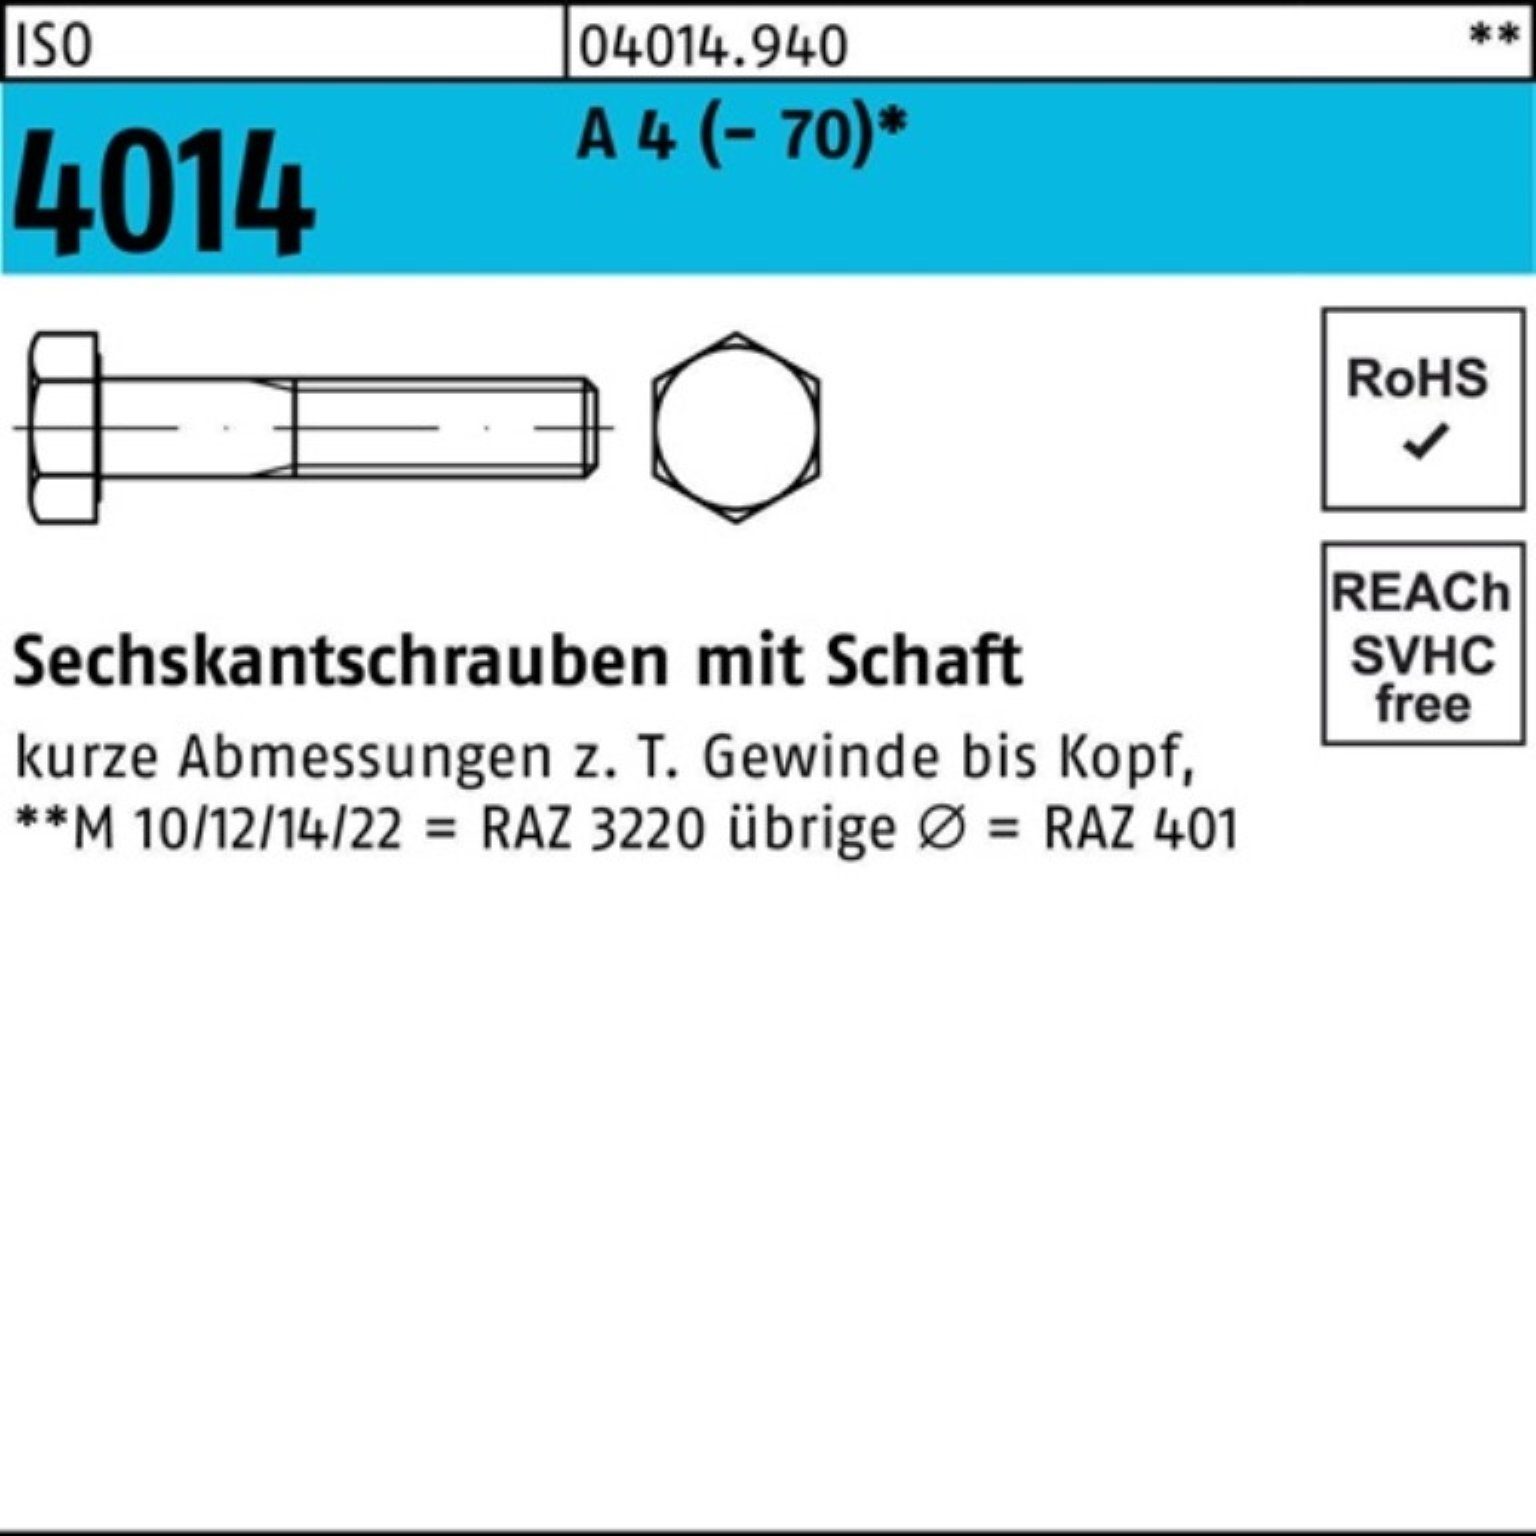 Sechskantschraube Pack 4014 100er 1 A ISO Bufab (70) St 130 Schaft Sechskantschraube 4 M27x